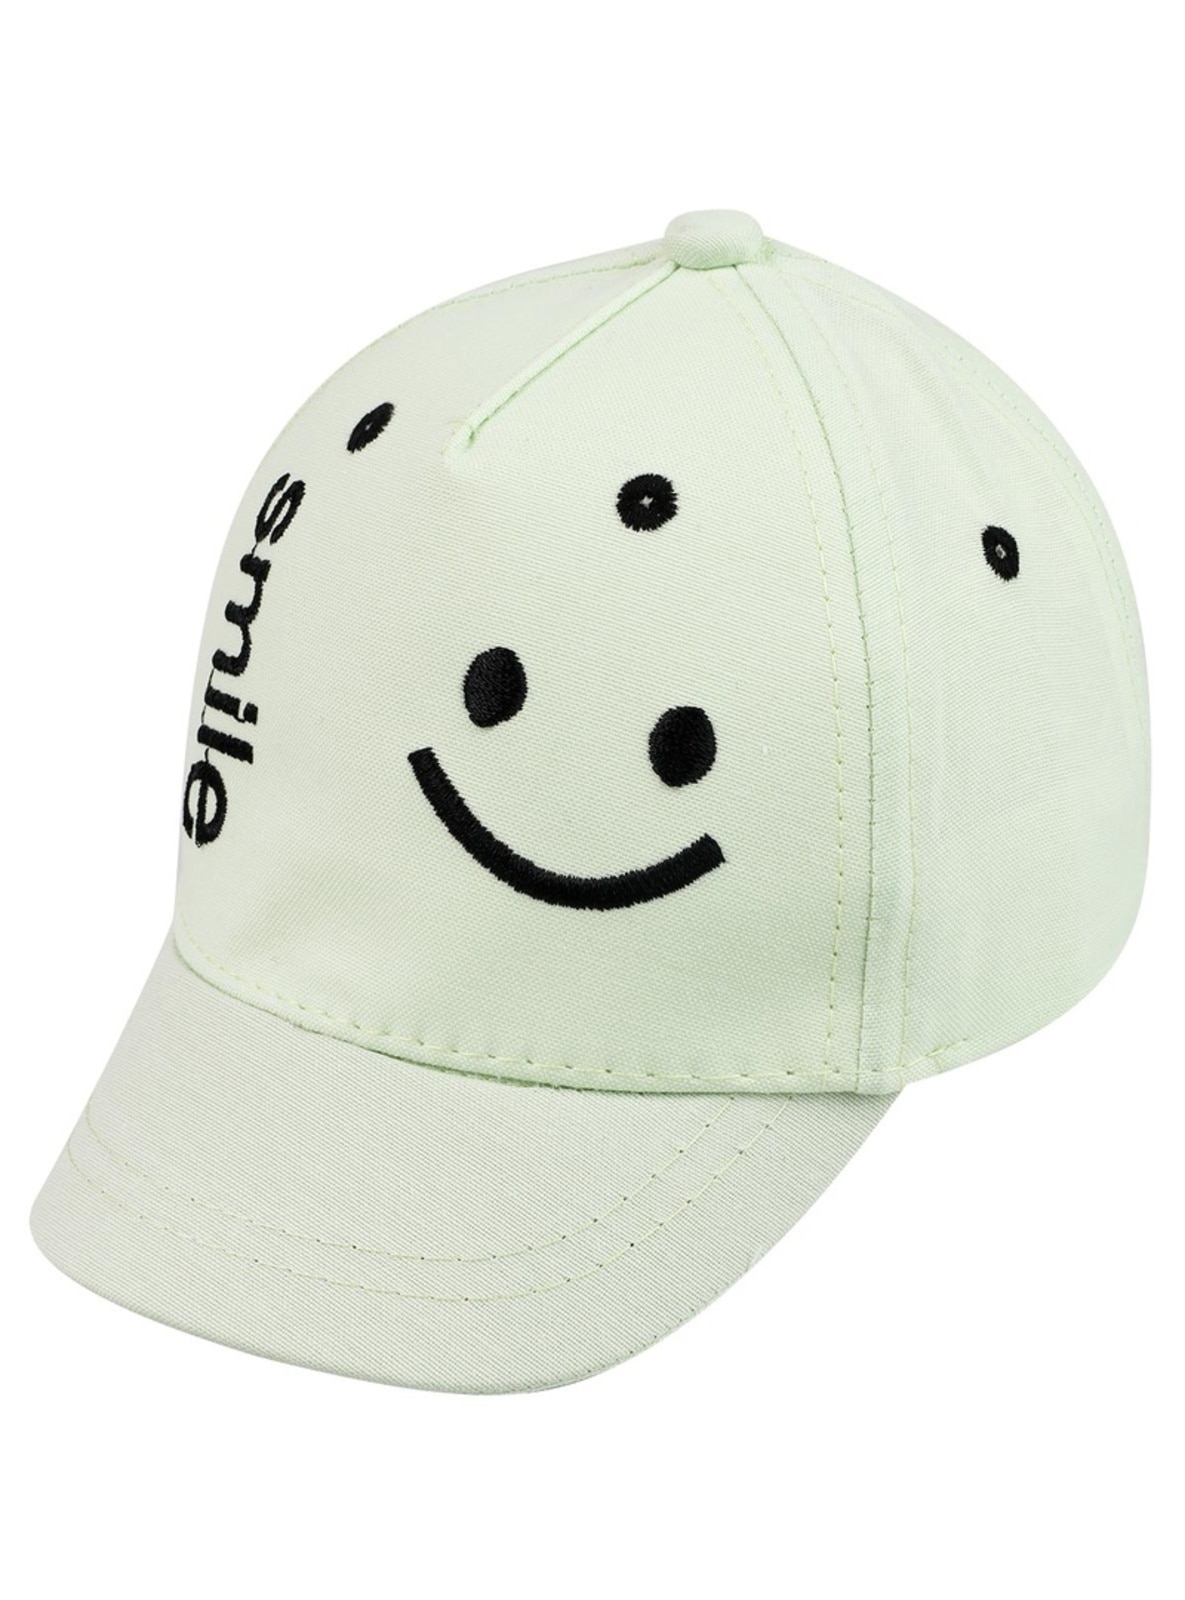 Green - Baby Headbands, Hats & Hairclips